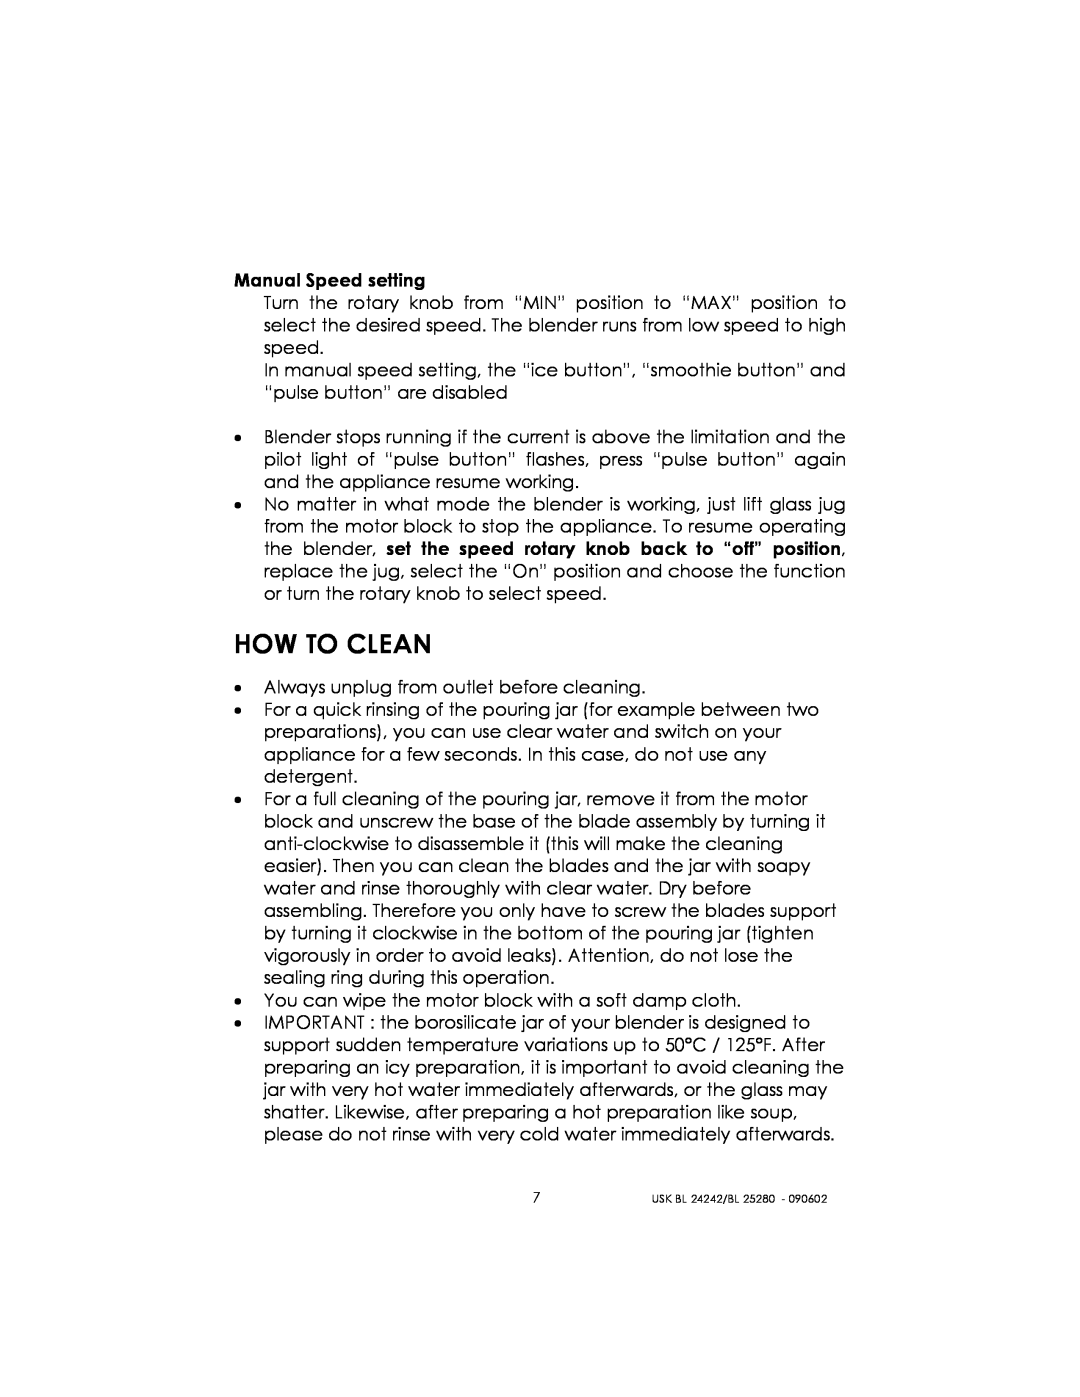 Kalorik BL 24242, BL 25280 manual How To Clean 